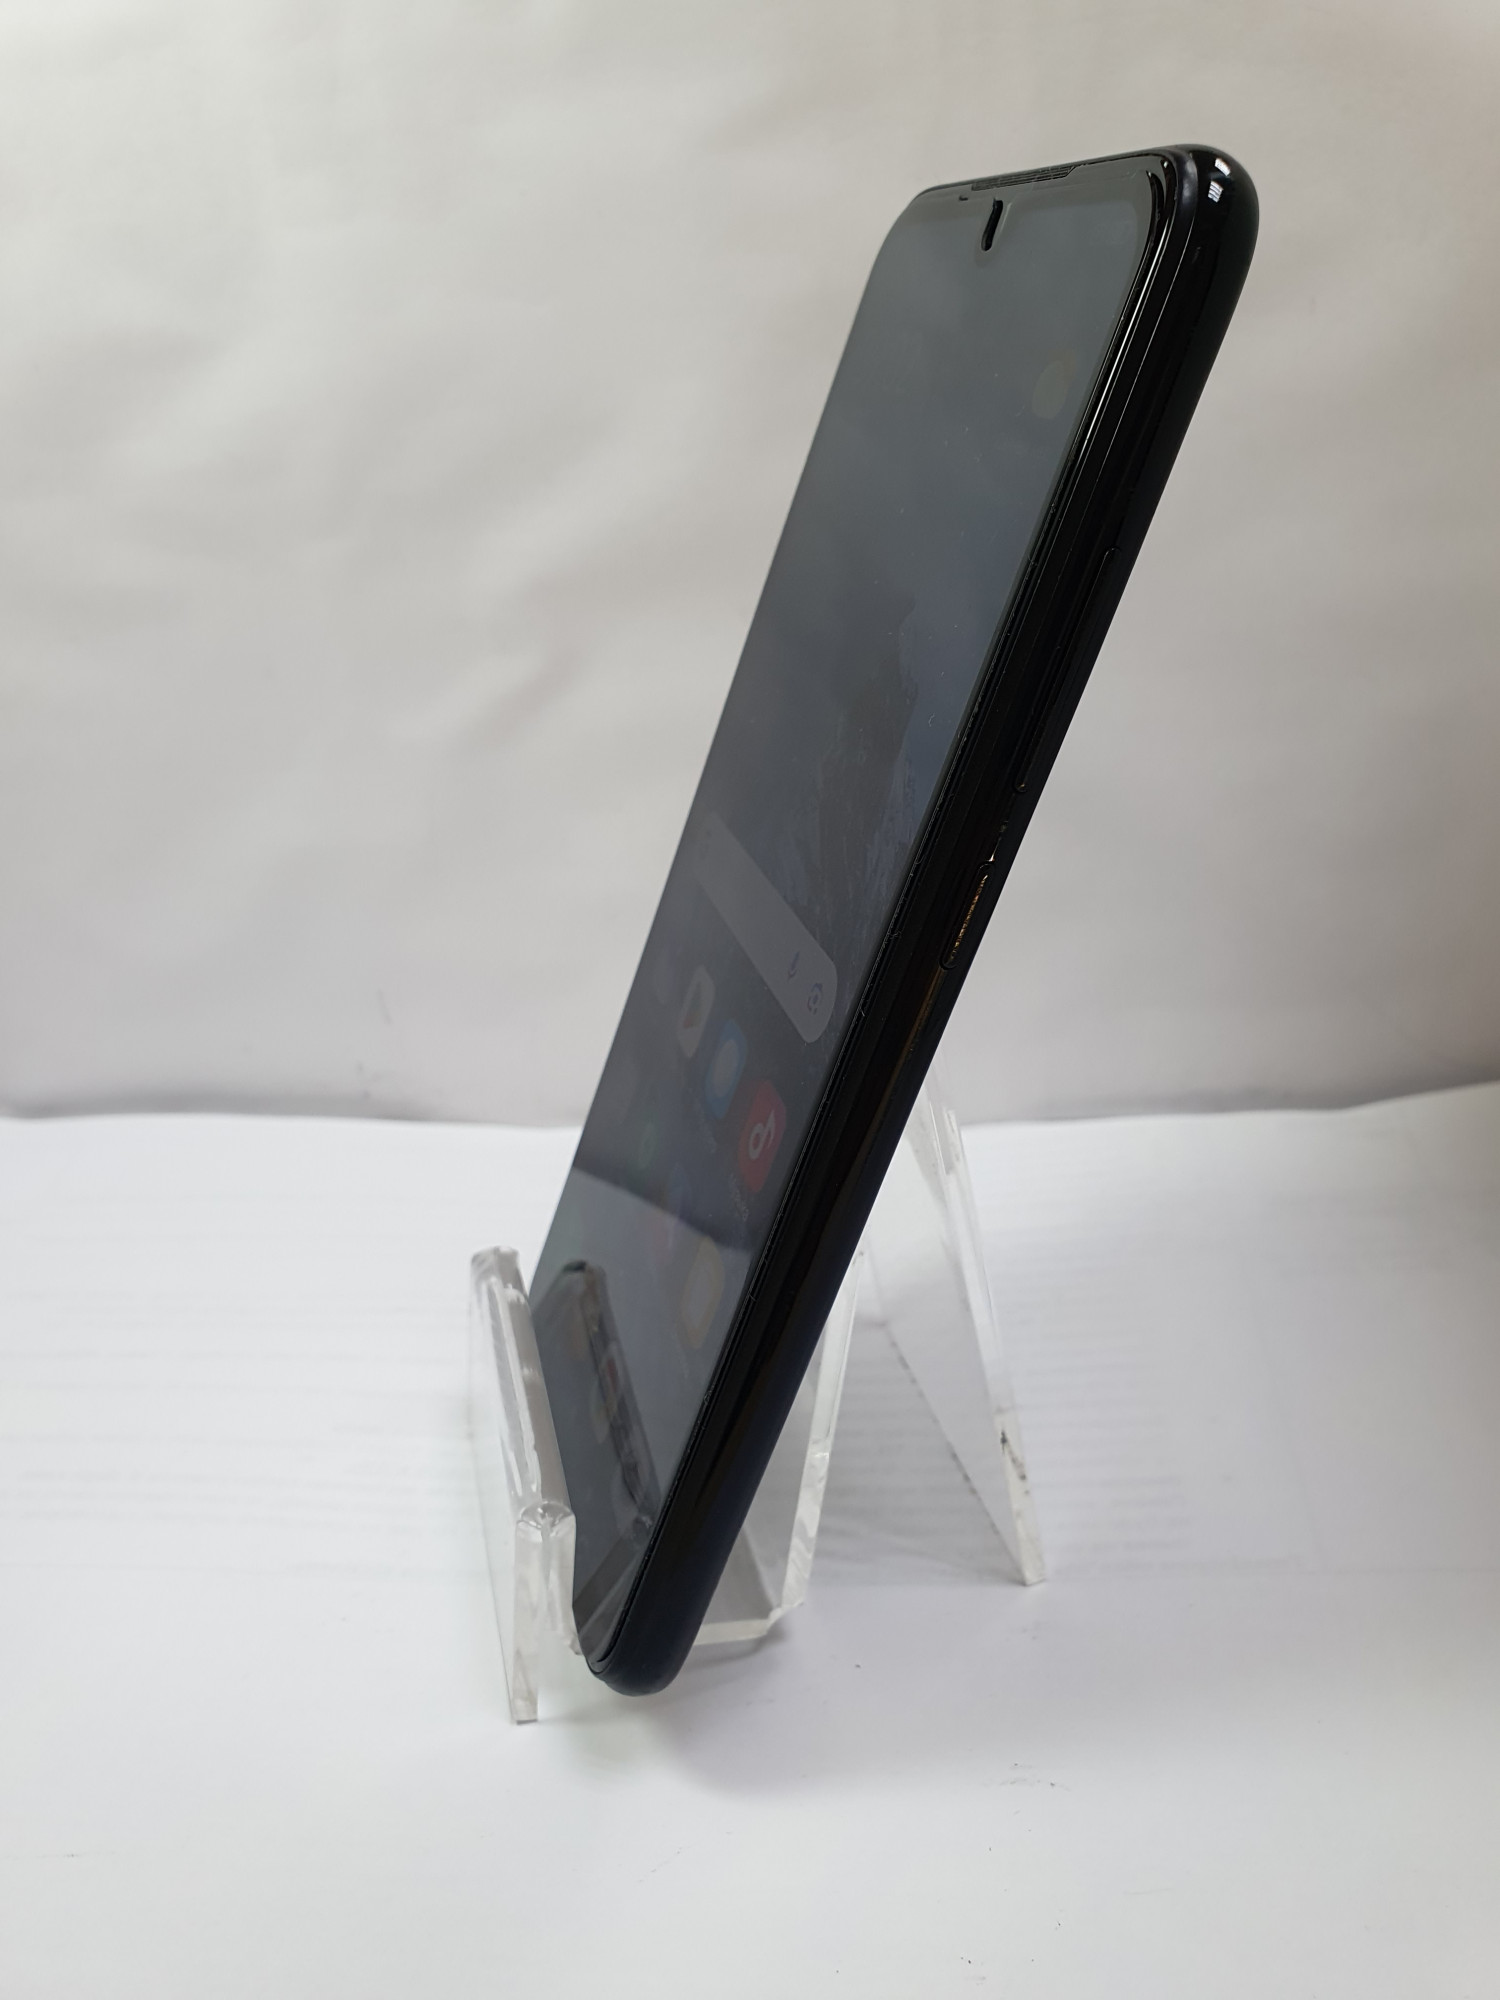 Xiaomi Redmi Note 7 4/64GB Space Black 2